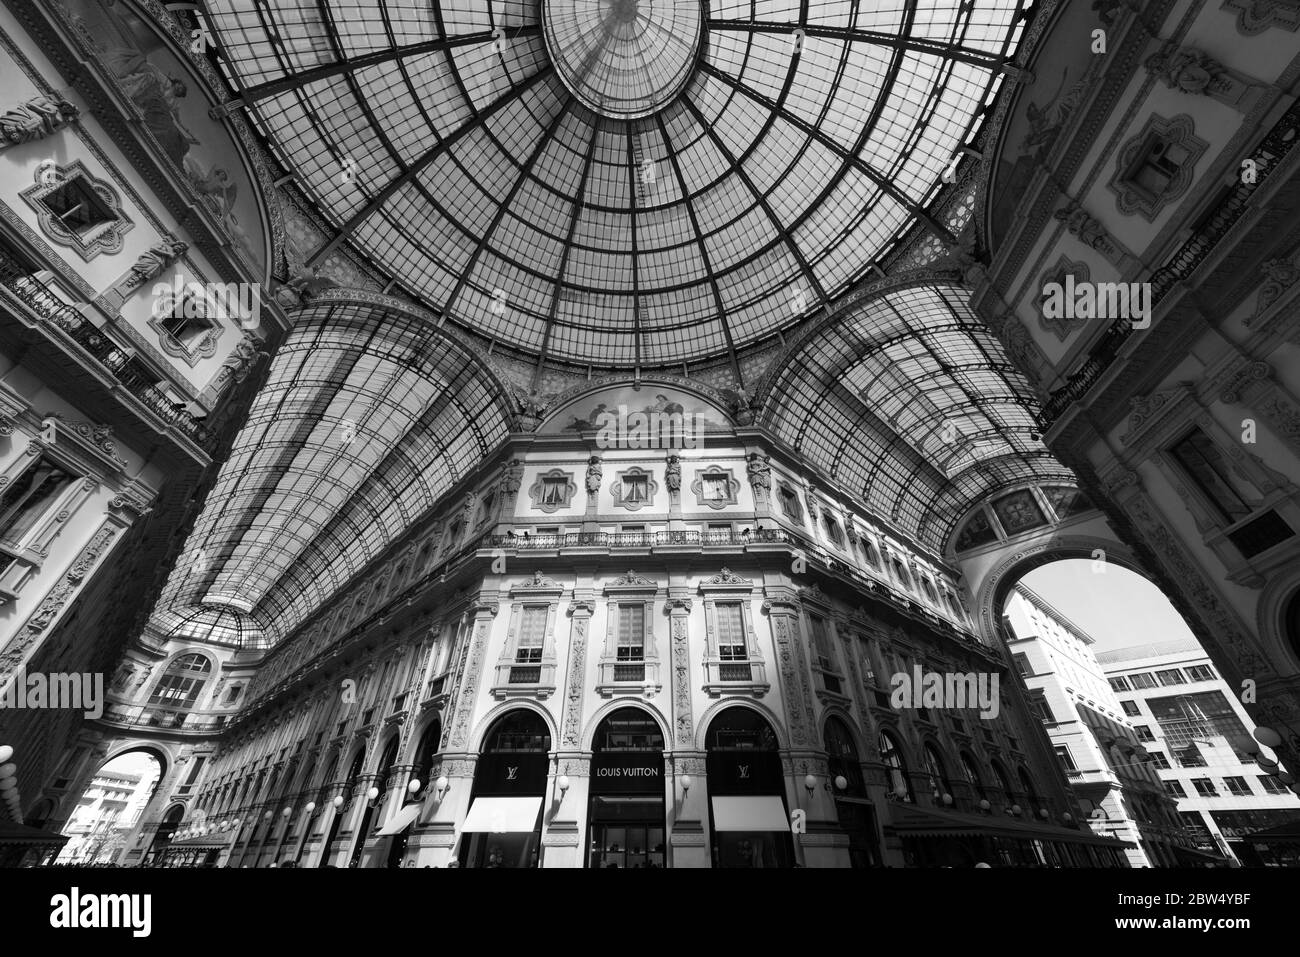 MILÁN, ITALIA - 16, MARZO, 2018: Imagen en blanco y negro del interior decorado de la Galería Vittorio Emanuele II, situada en Milán, Italia Foto de stock